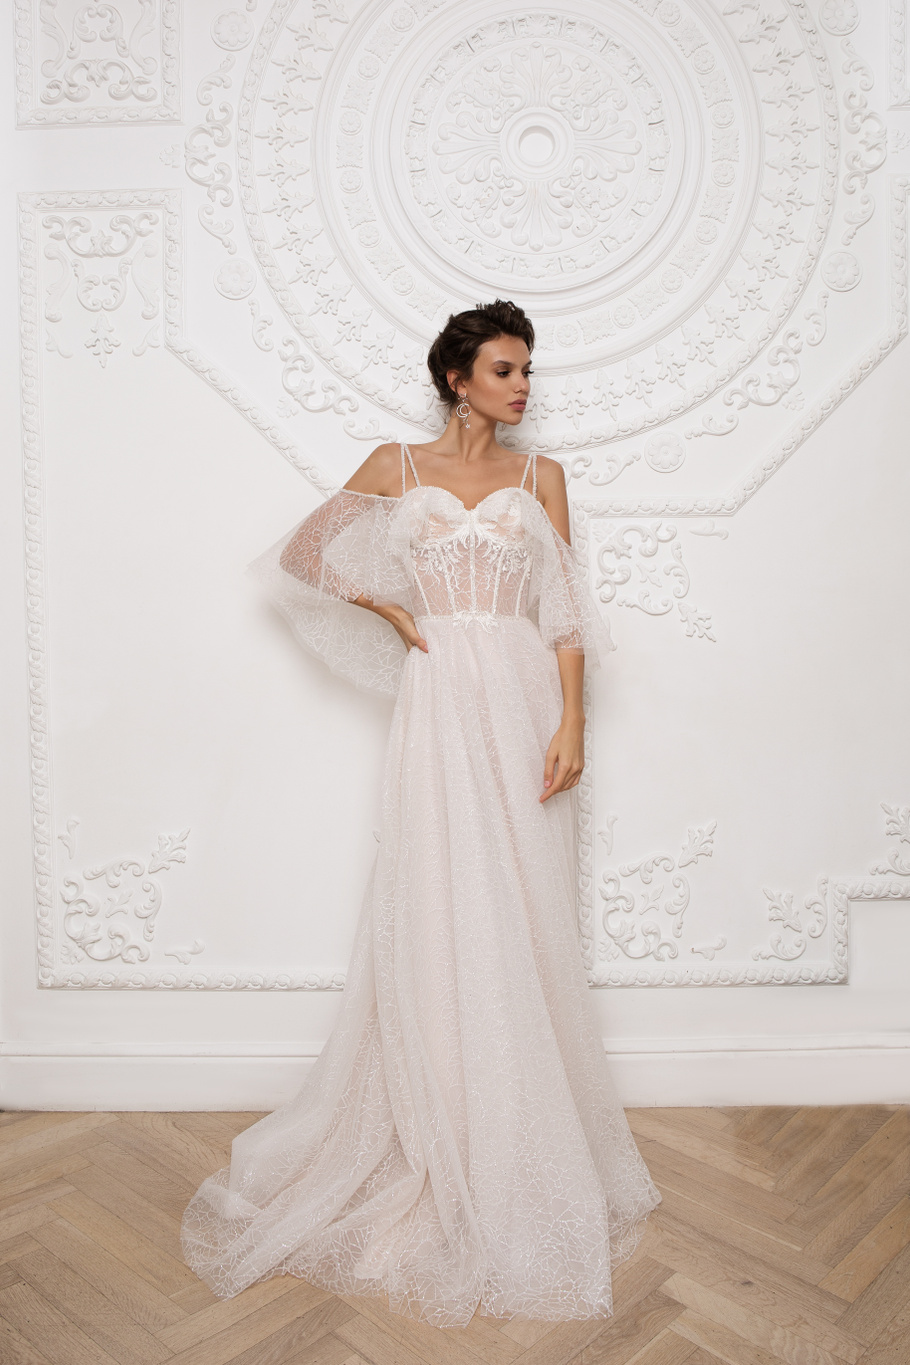 Купить свадебное платье «Кассия» Мэрри Марк из коллекции 2020 года в Ярославле